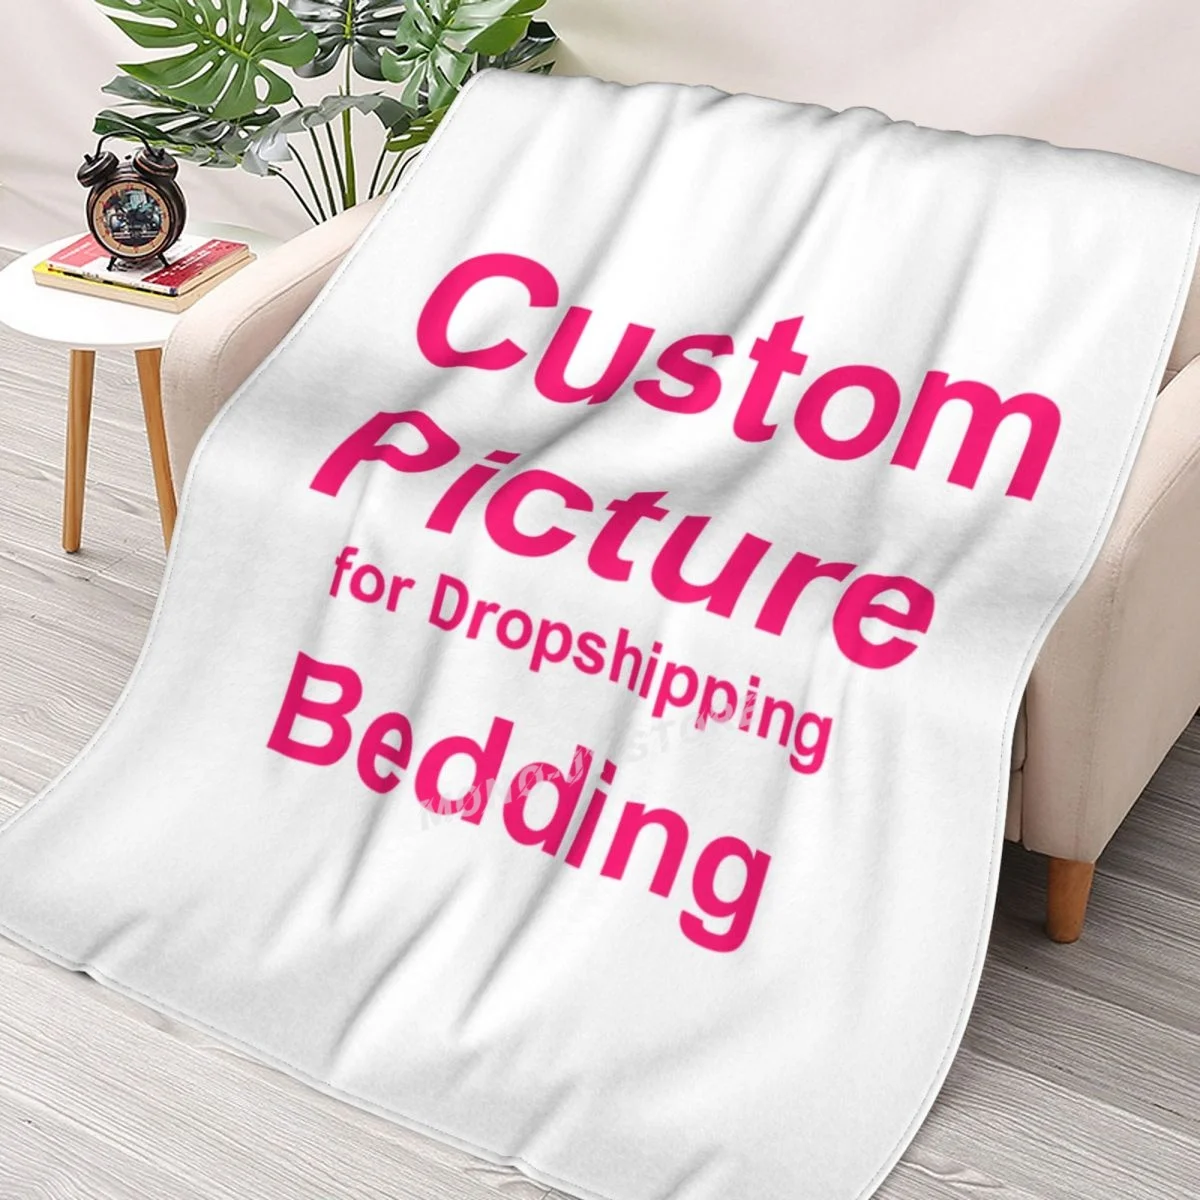 Фланелевое одеяло на заказ, Флисовое одеяло с индивидуальным фото для дивана, подарок, печать на заказ, Прямая поставка